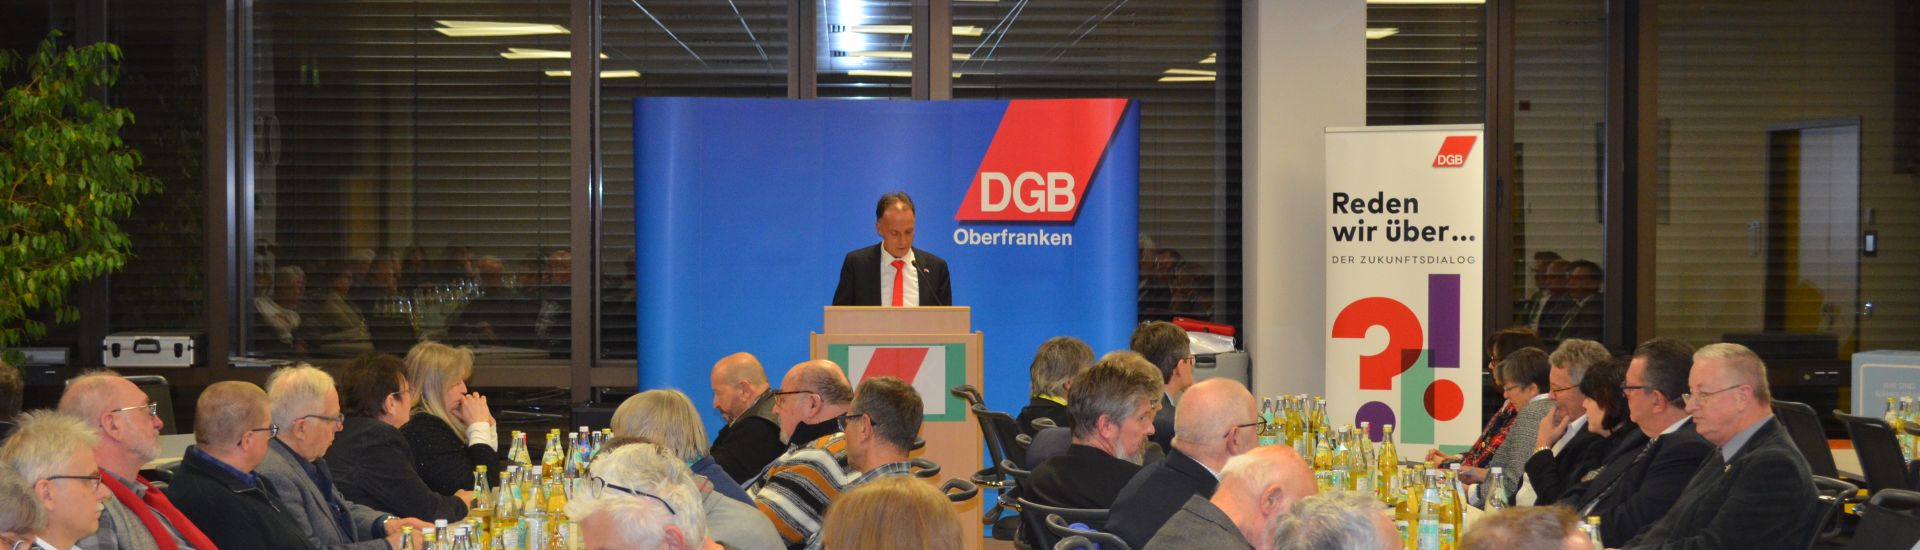 Neujahrsempfang der DGB-Region Oberfranken: Die 4. Dimension der Digitalisierung - Der Mensch im Blick 